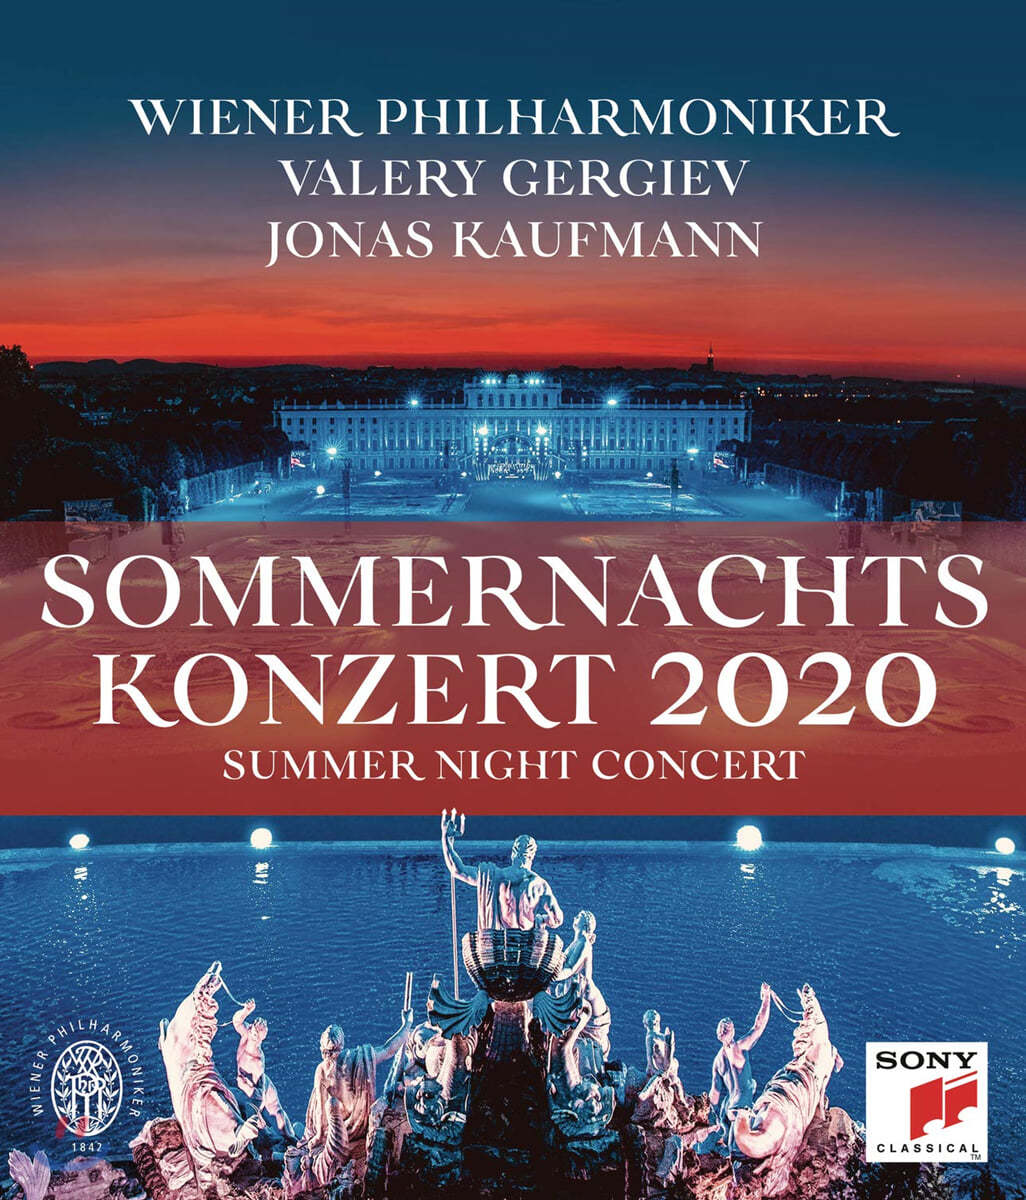 2020 빈 필하모닉 여름 음악회 [썸머 나잇 콘서트] (Summer Night Concert 2020 - Valery Gergiev) [블루레이] 